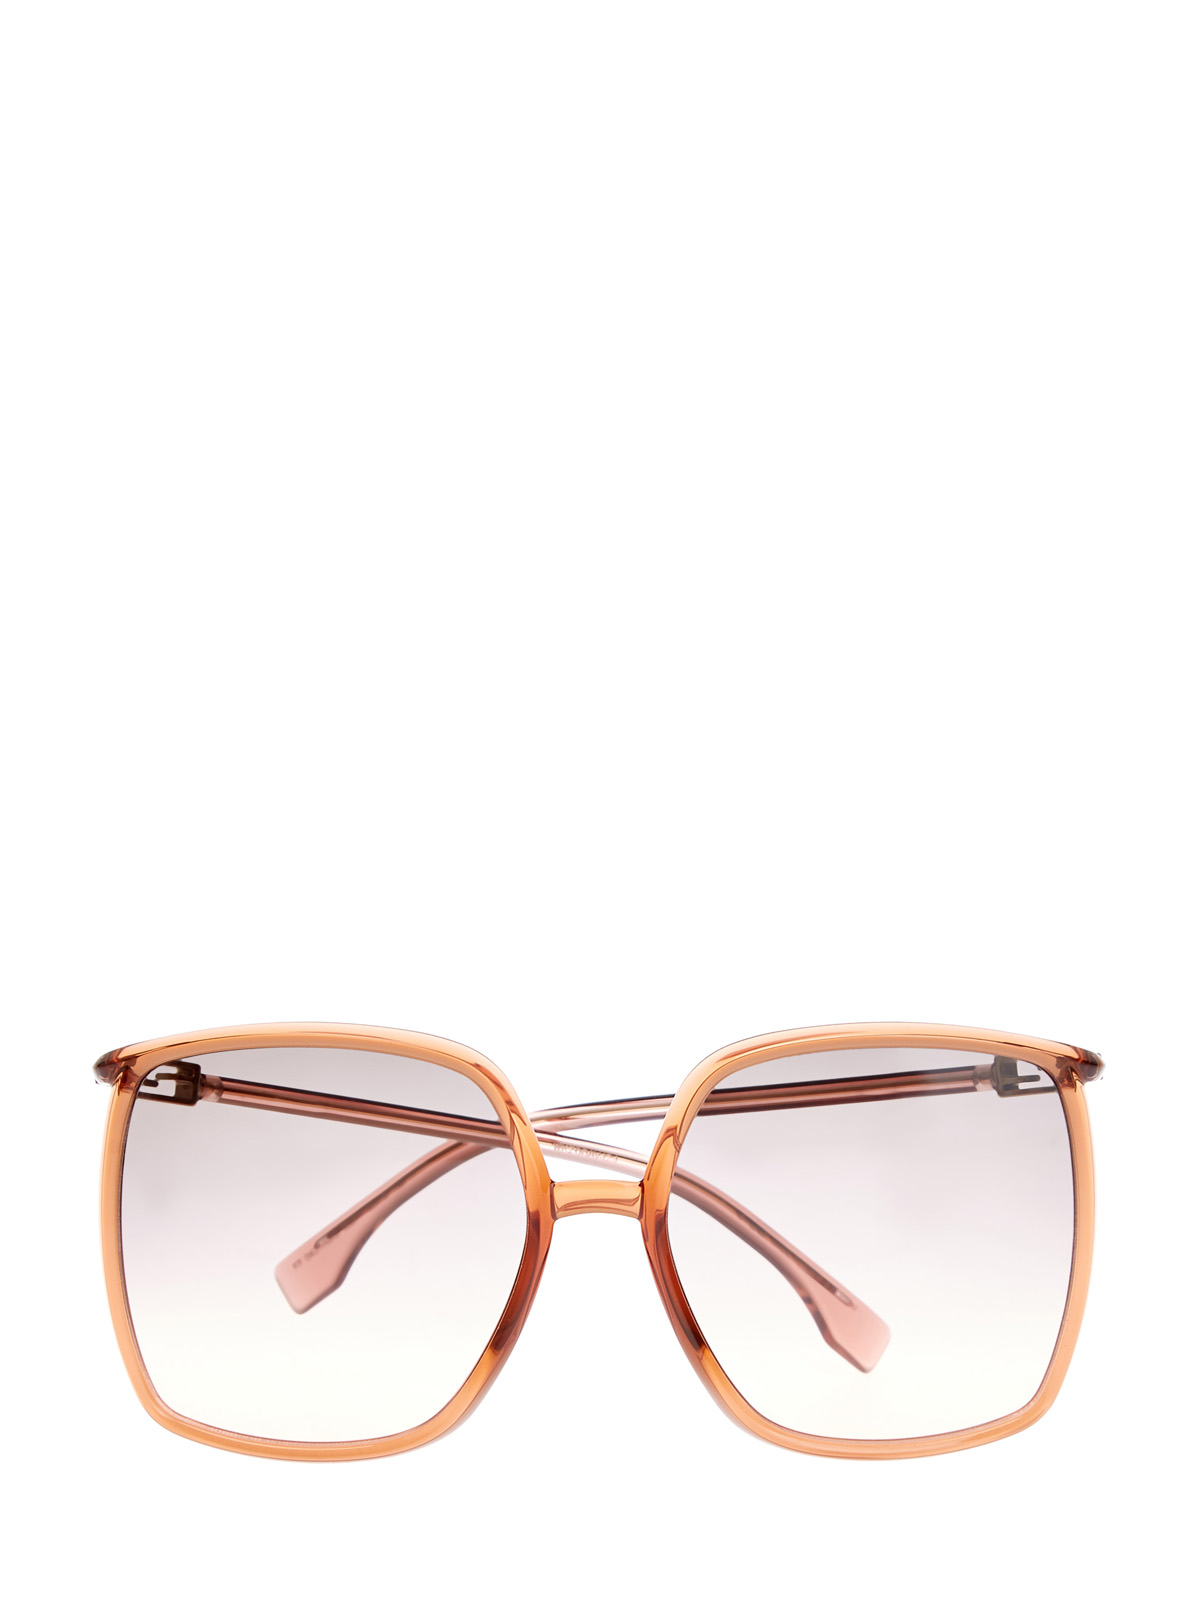 Oversize-очки в легкой оправе с логотипом FF на дужках FENDI (sunglasses), цвет мульти, размер 5;5.5;6;6.5;7;7.5;8;9;10